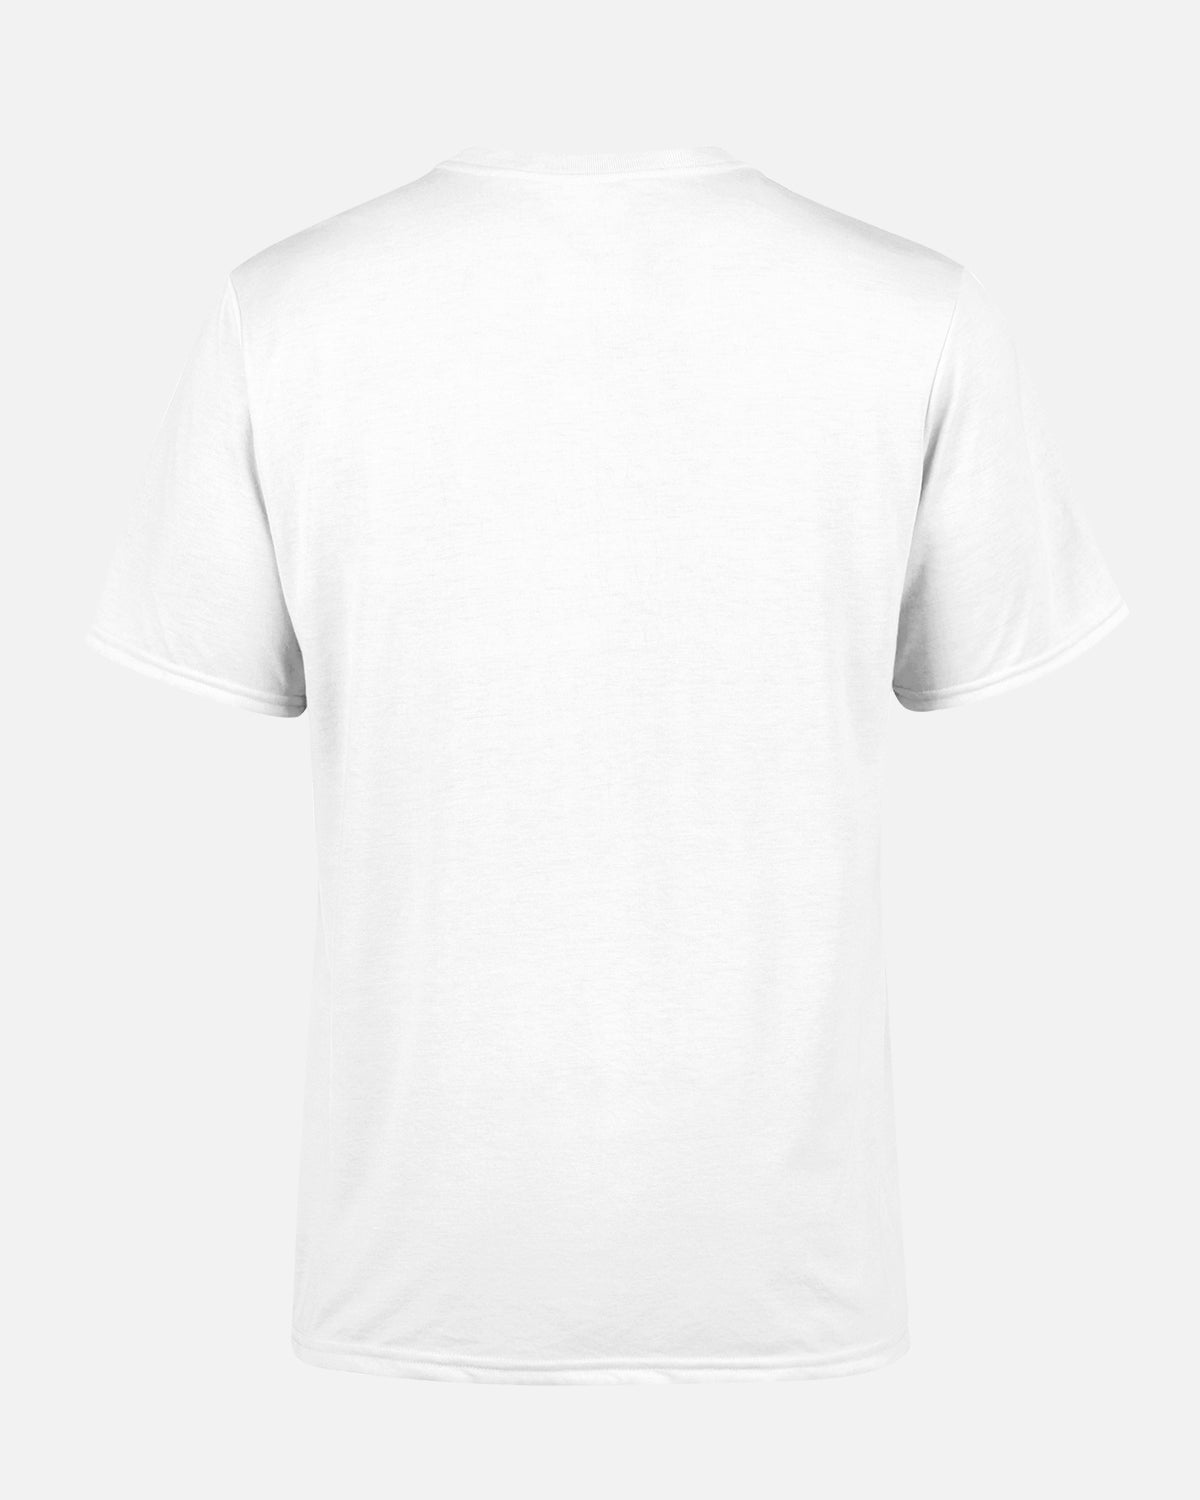 NFFC White City Ground Crest T-Shirt